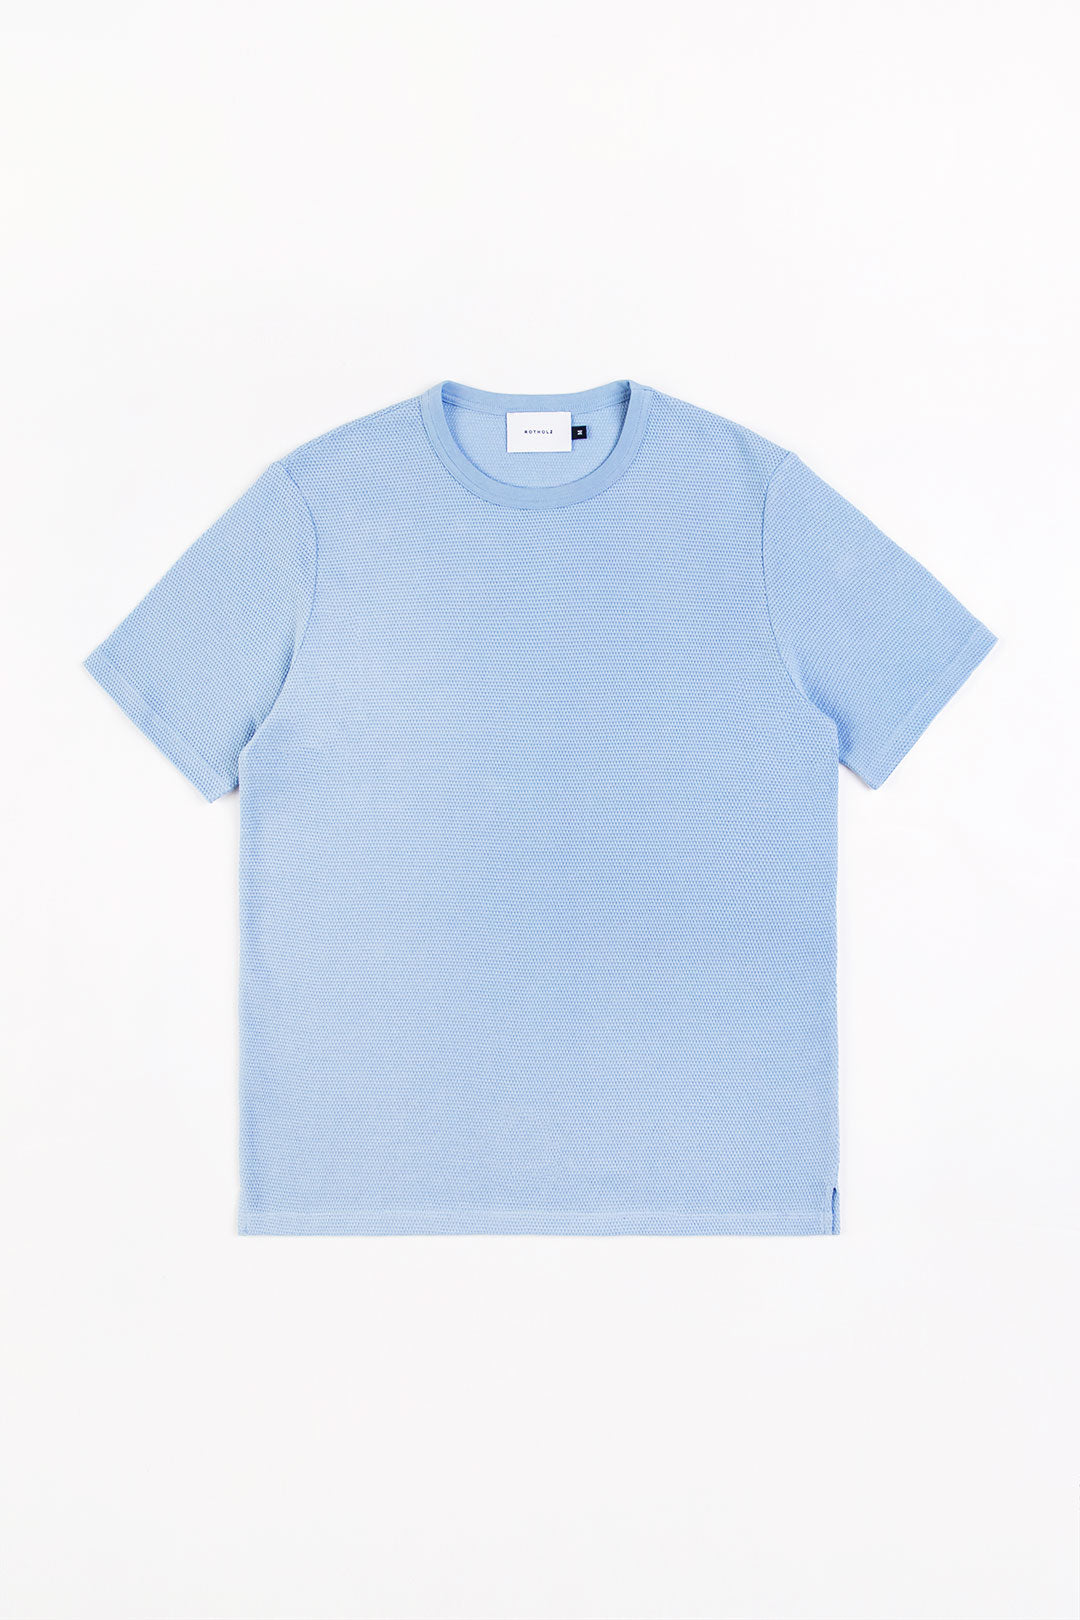 Hell-blaues T-Shirt aus 100% Bio-Baumwolle von Rotholz